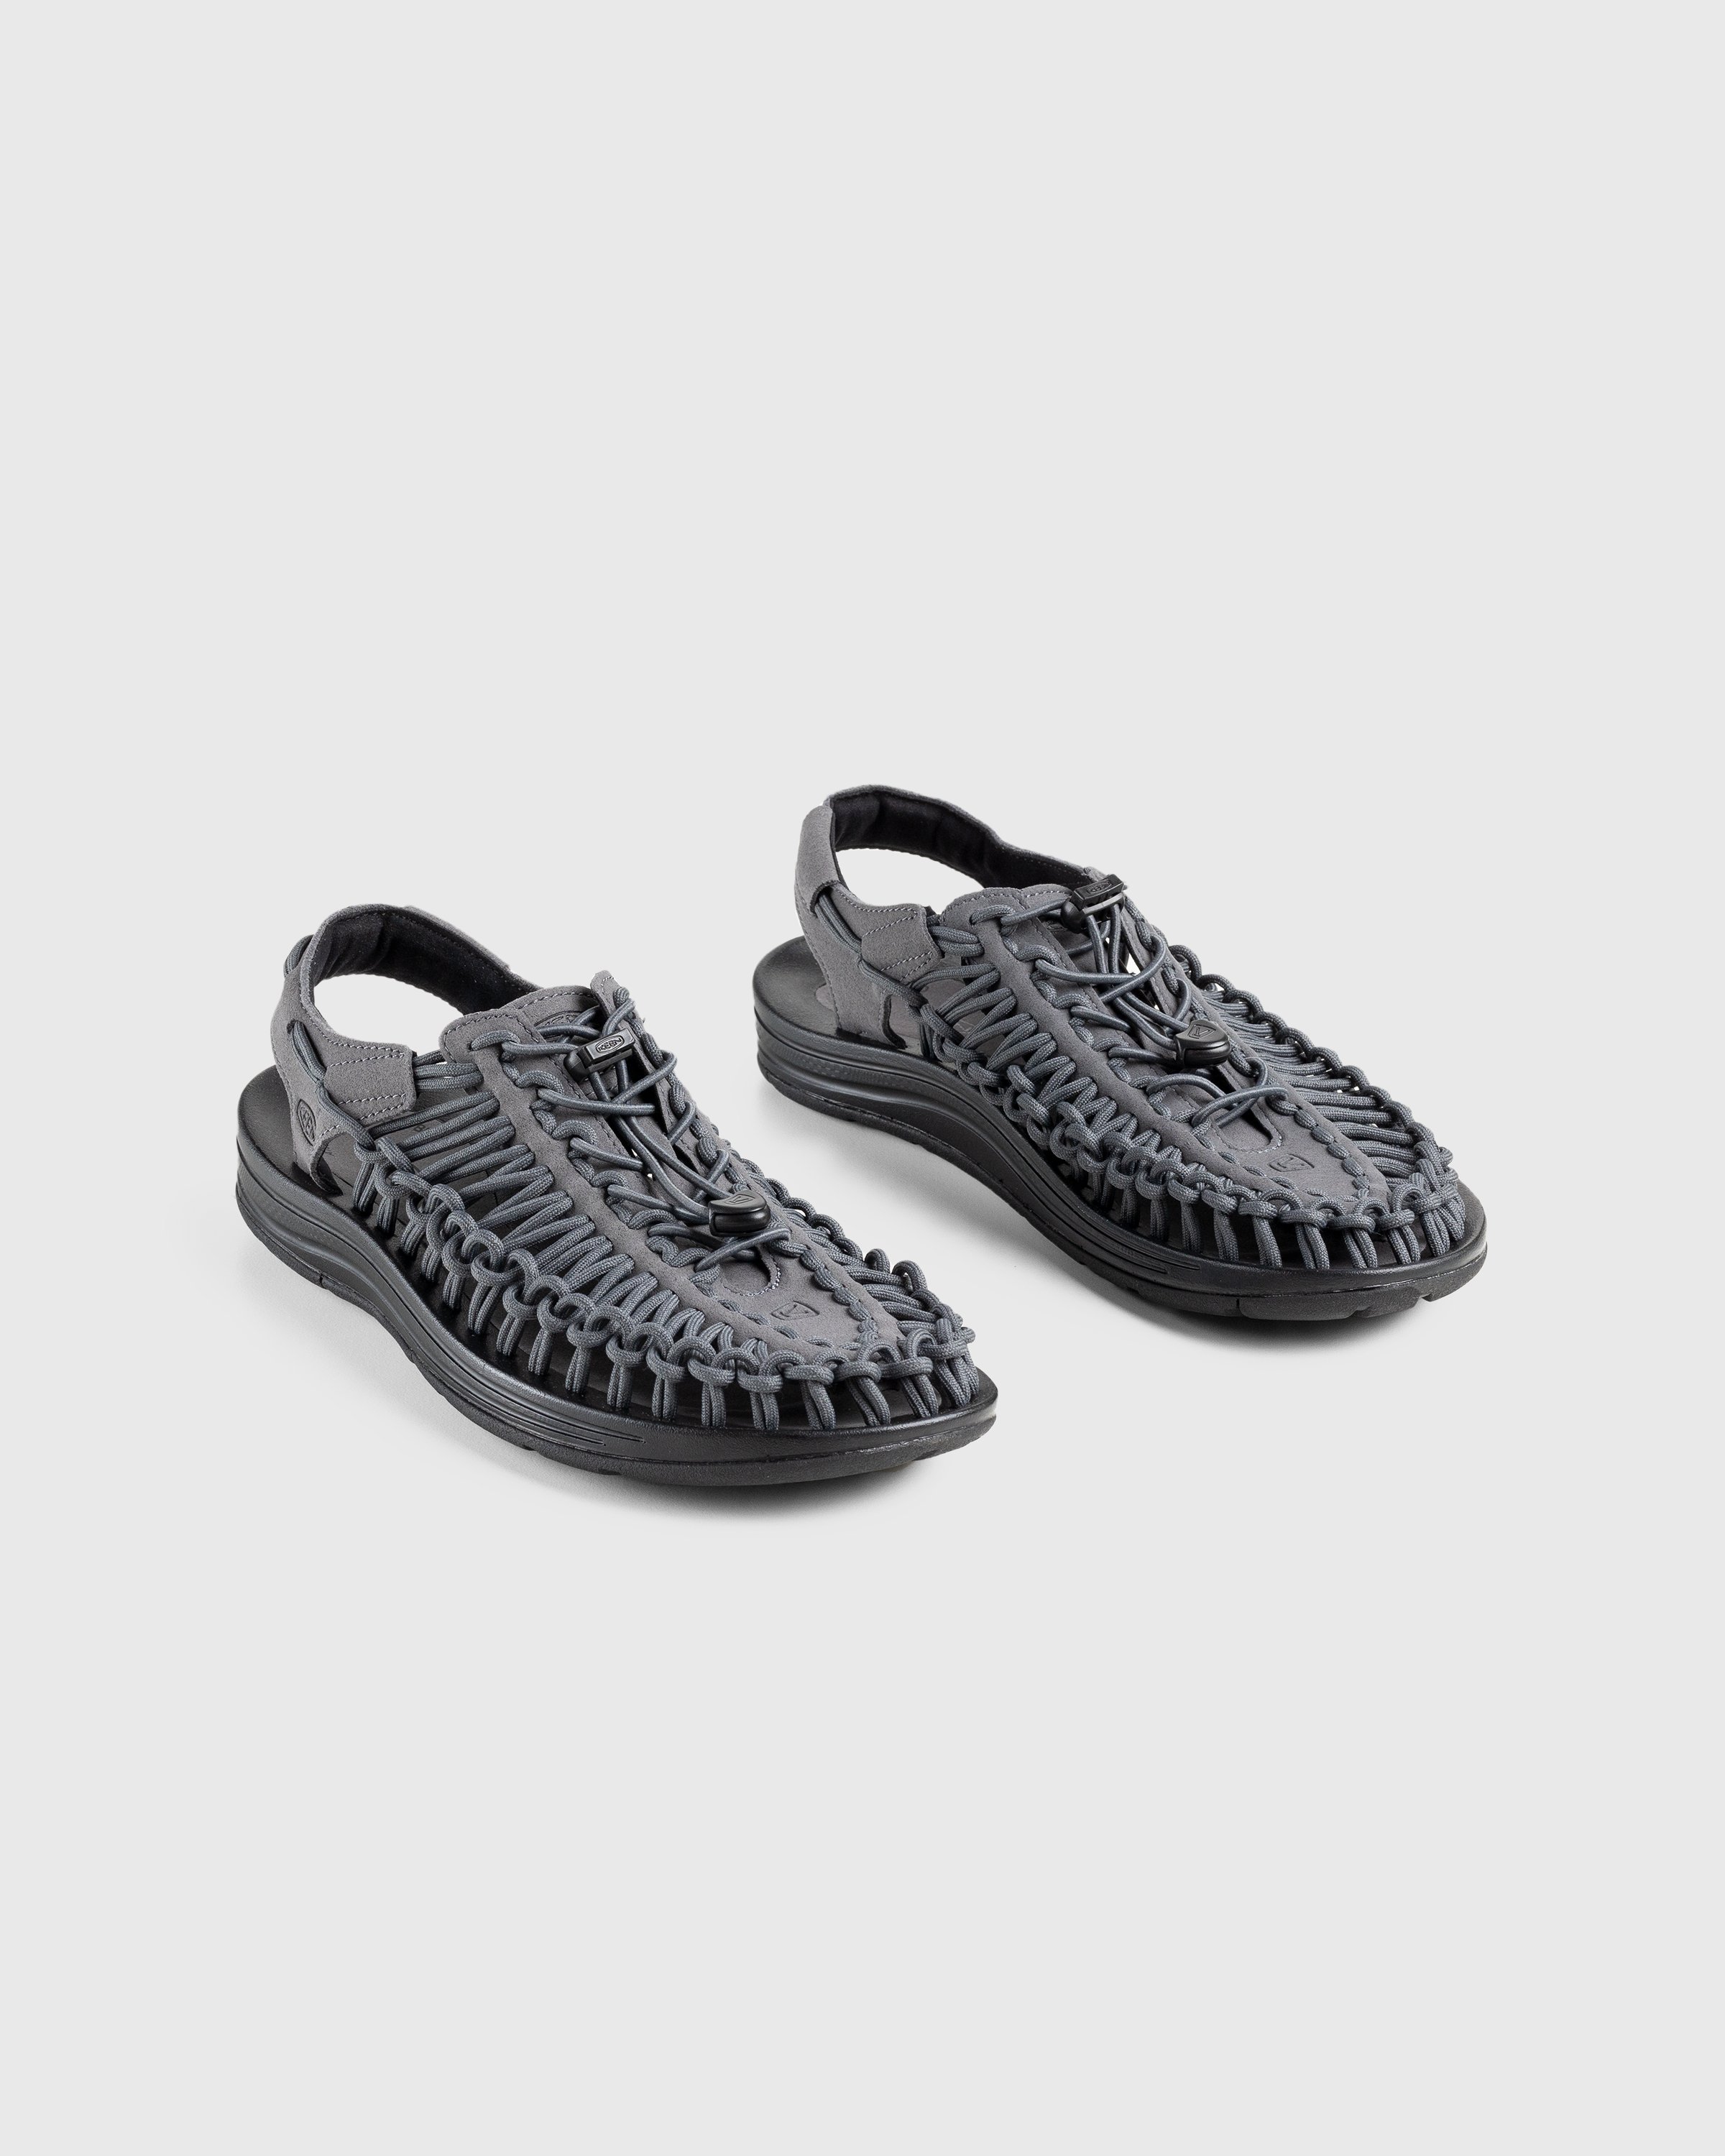 Keen - Uneek Magnet/Black - Footwear - Grey - Image 3